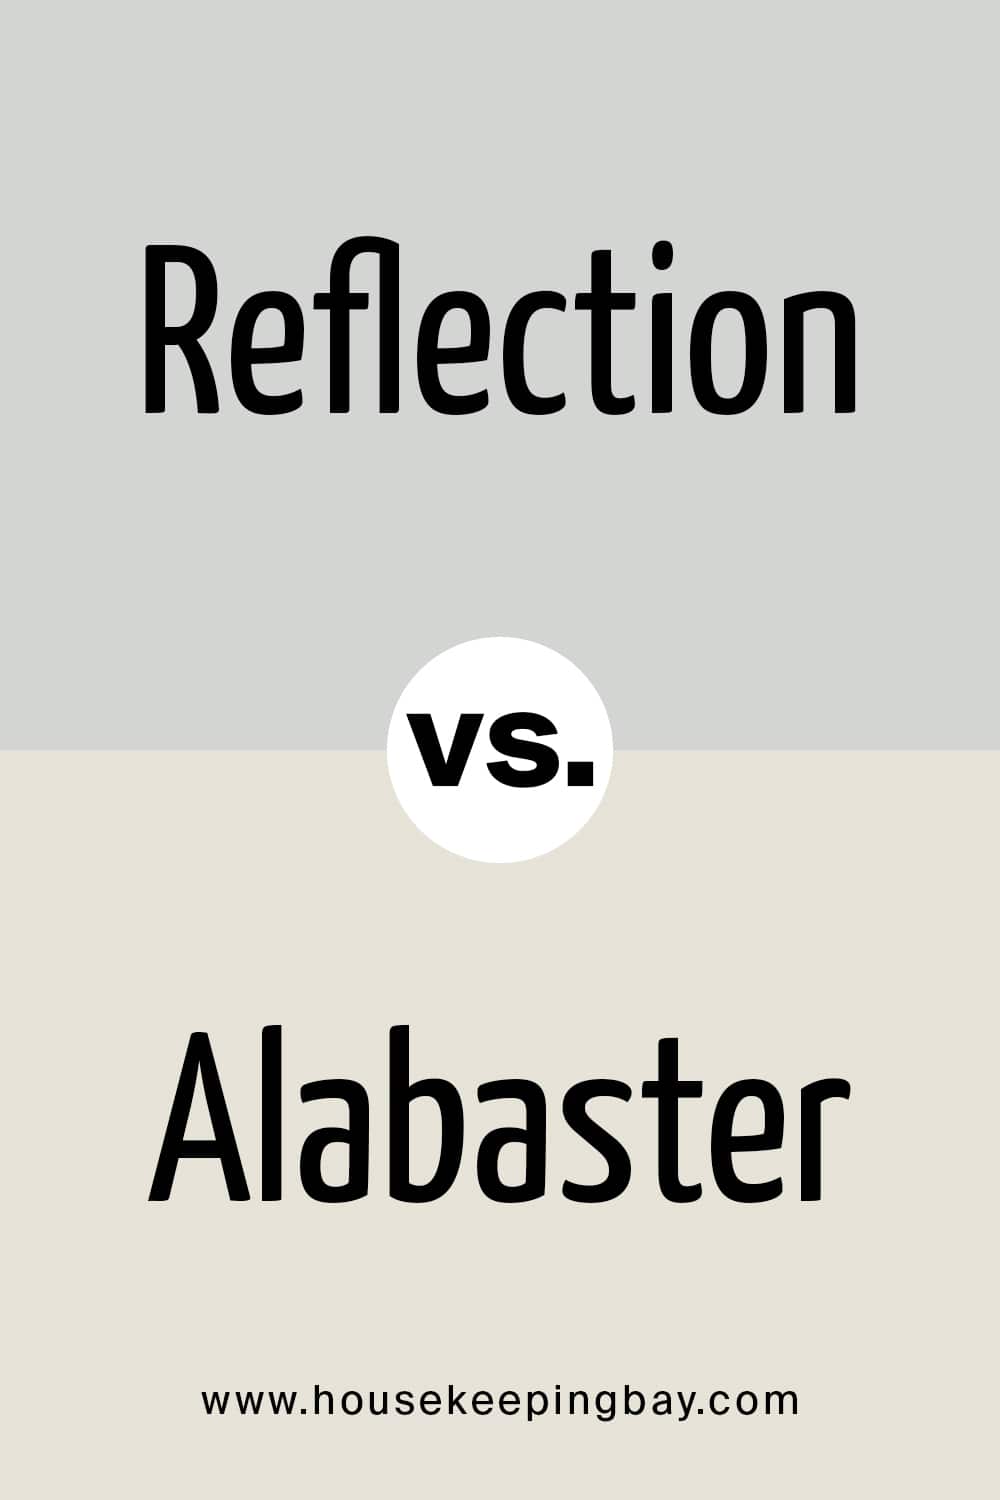 Reflection VS Alabaster